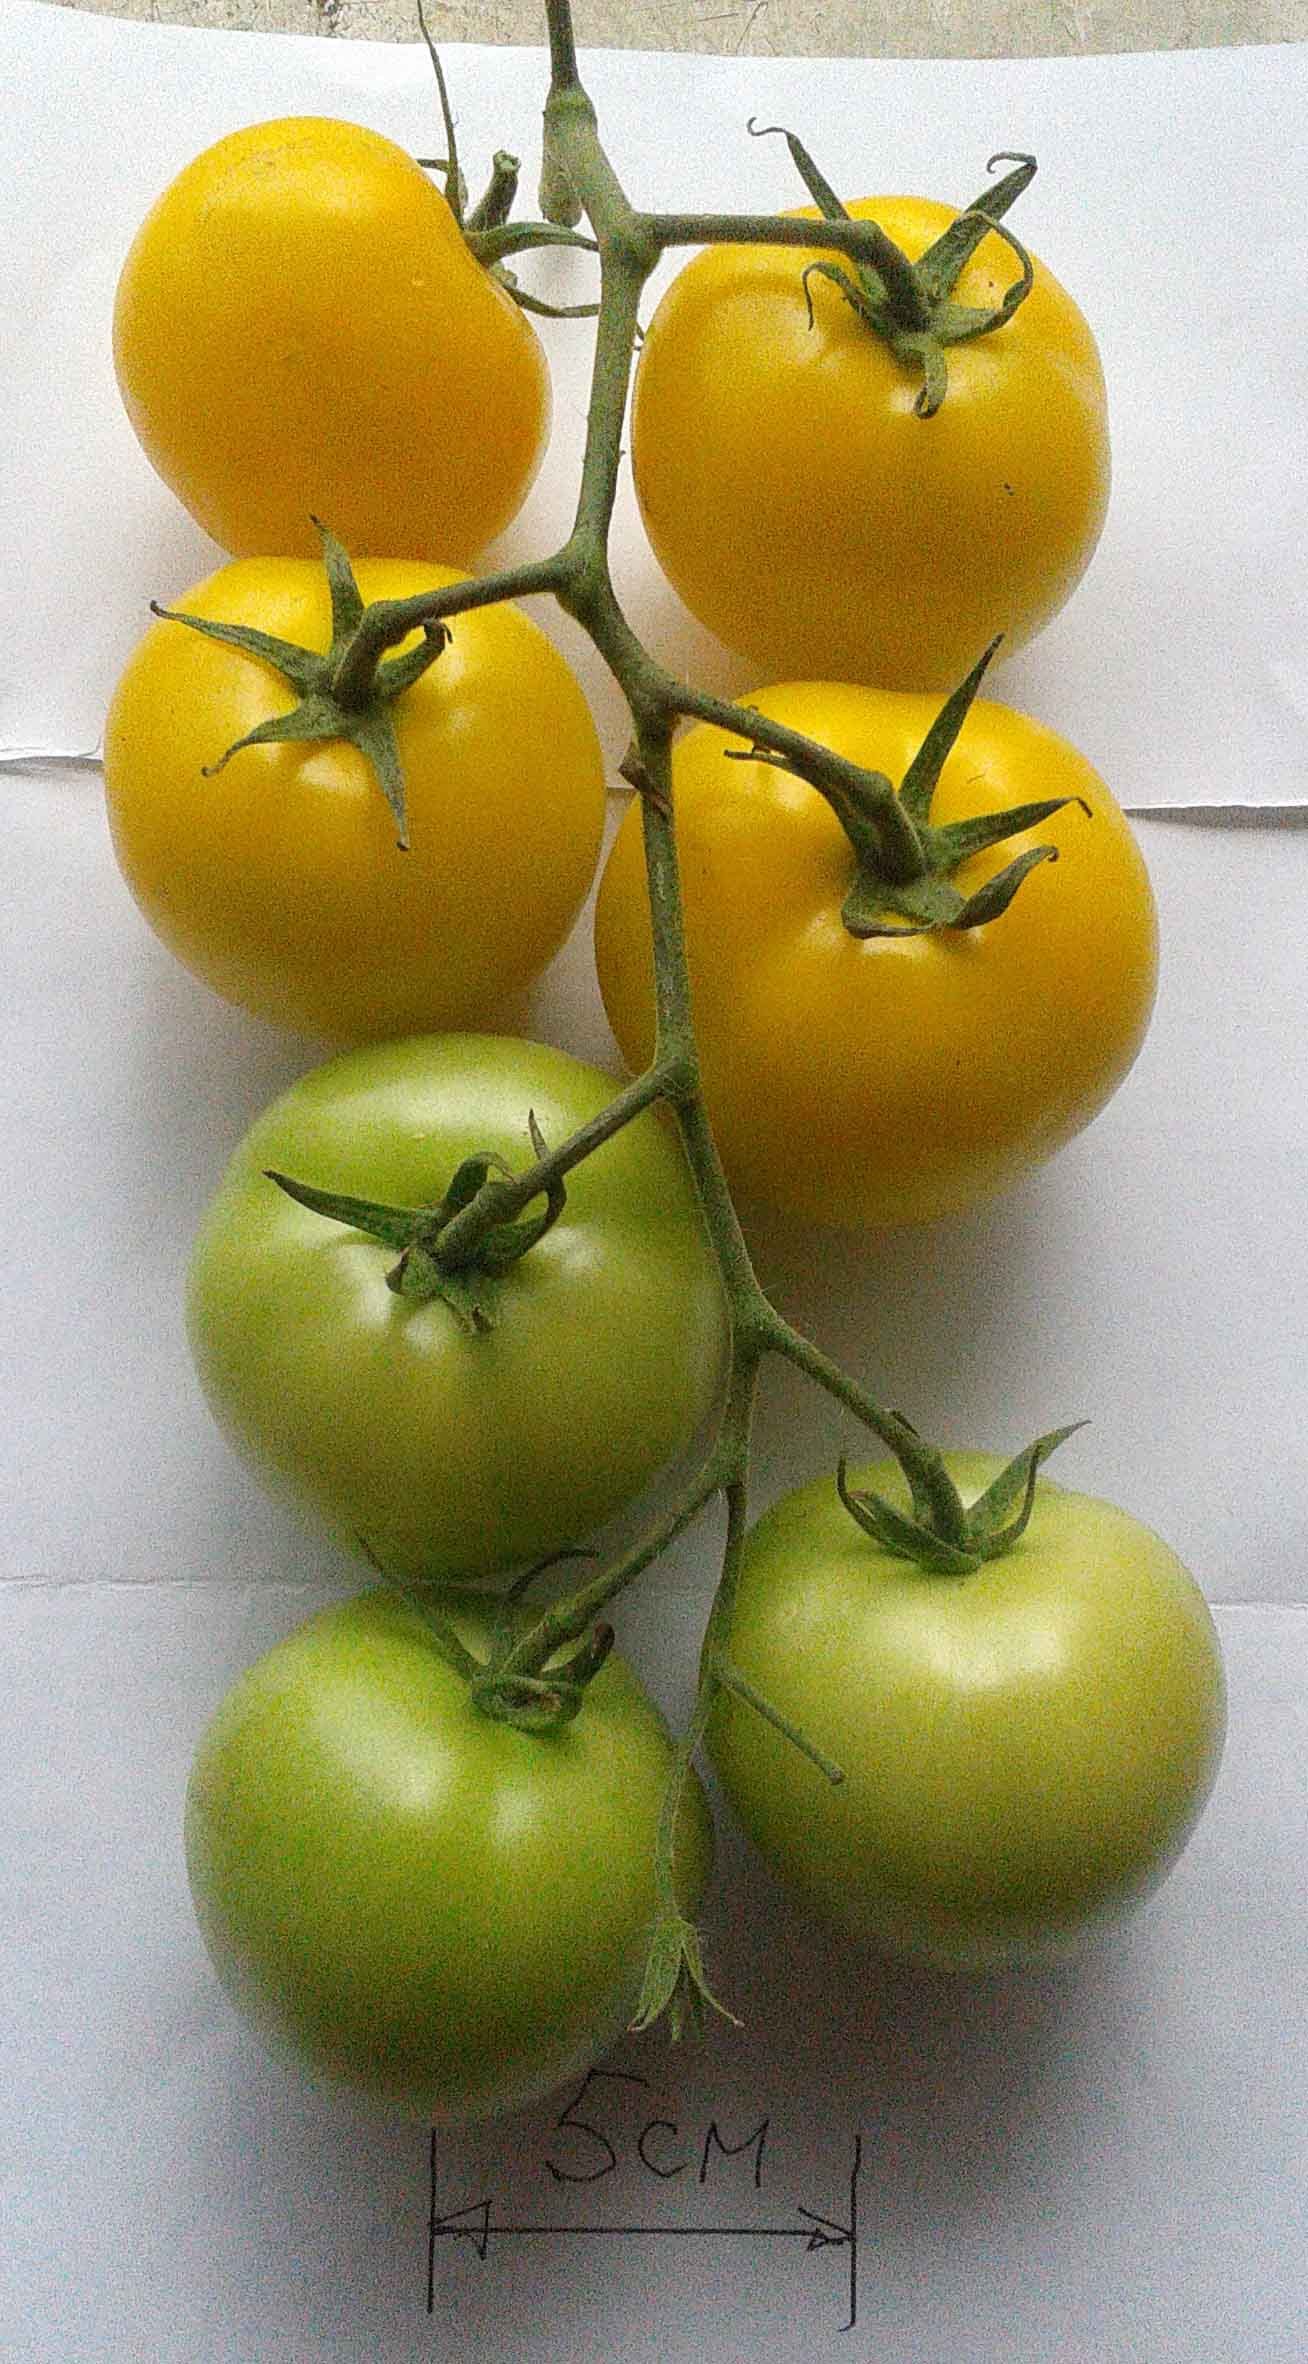 Сорта томатов, устойчивые к кладоспориозу - Страница 6 - Дачный форум:  дача, сад, огород, цветы.